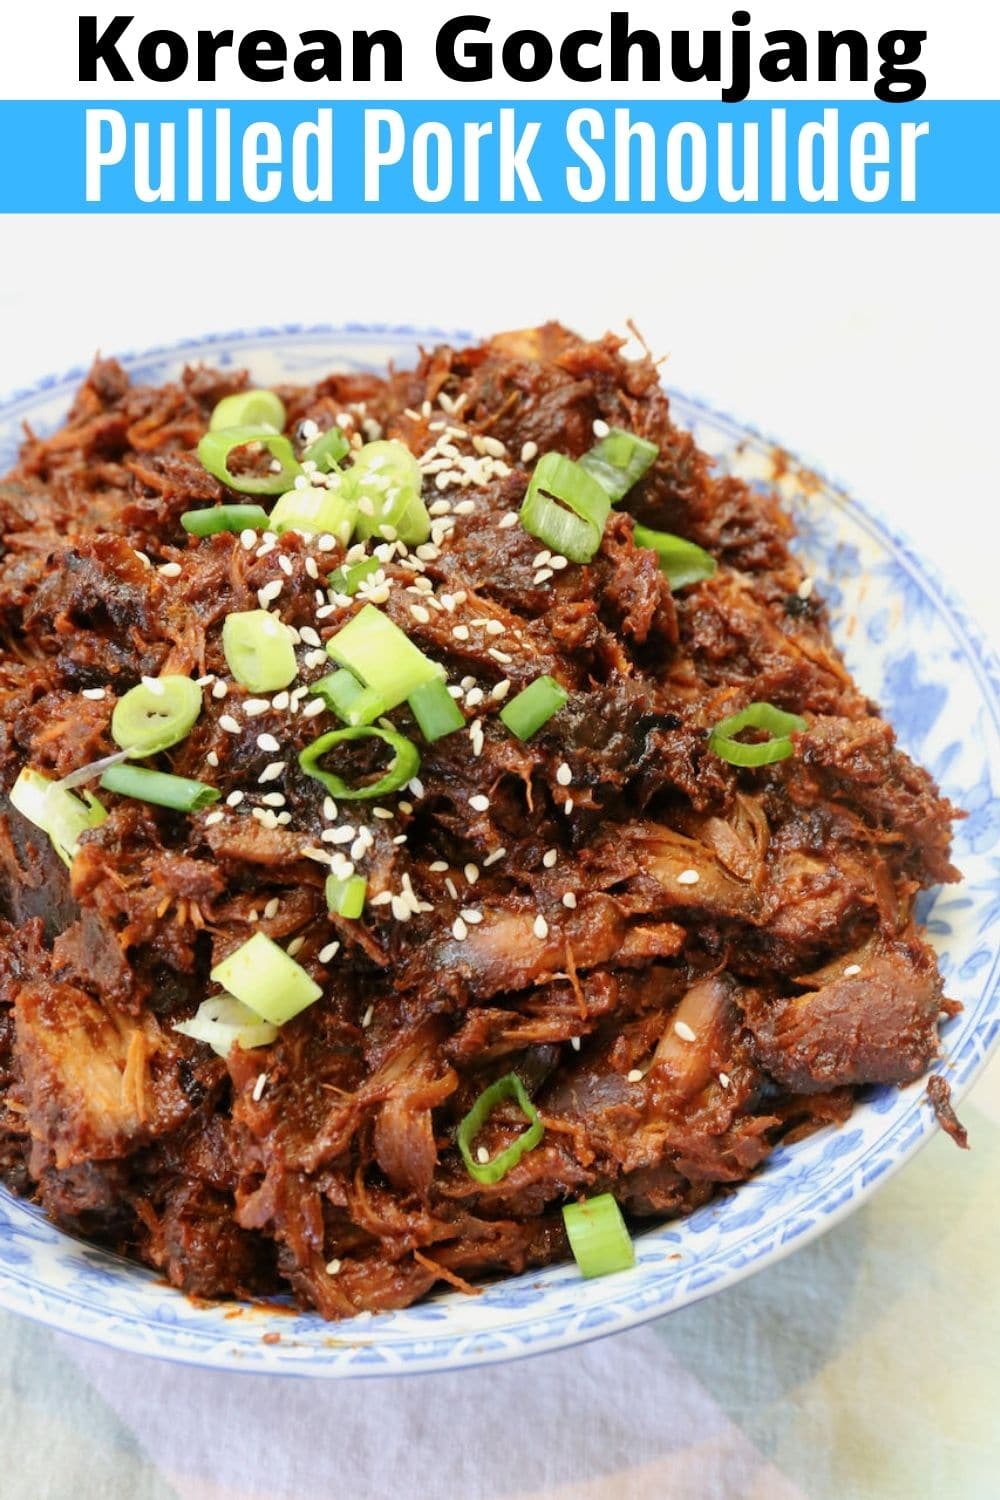 Oven Roasted Korean Gochujang Pulled Pork Shoulder Recipe ...